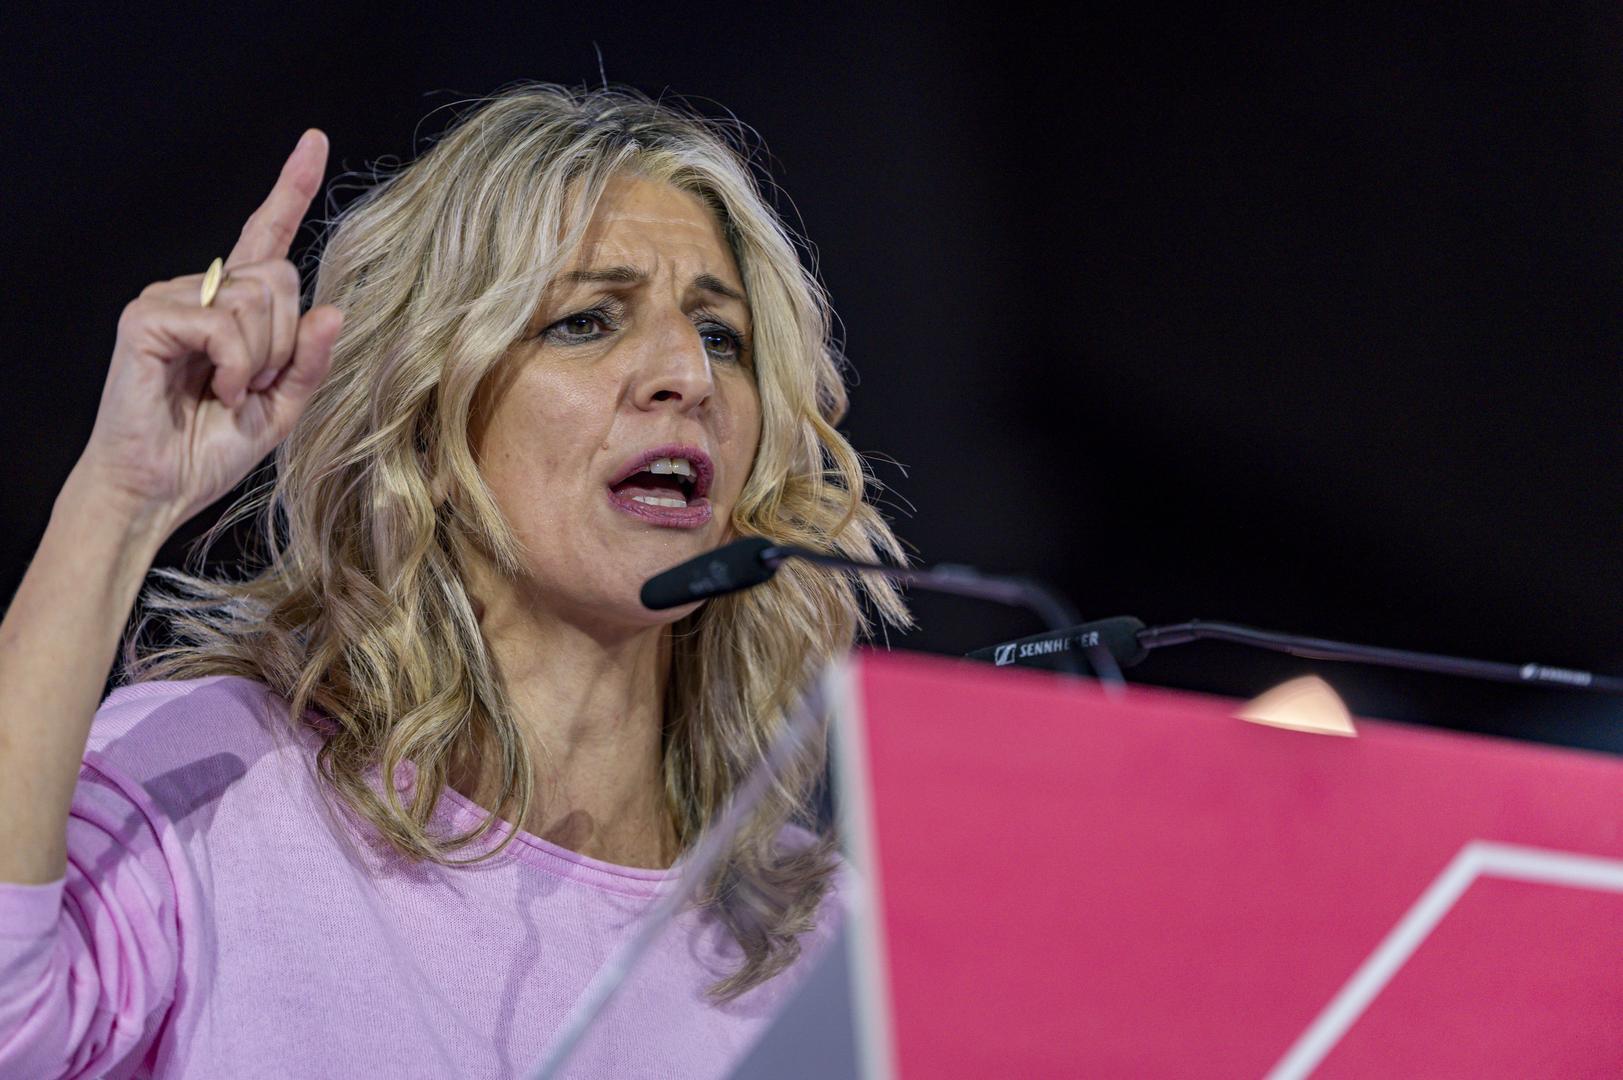 Según El Salto, Yolanda Díaz estaría vetando al candidato de IU, Manu Pineda, en la papeleta de las europeas